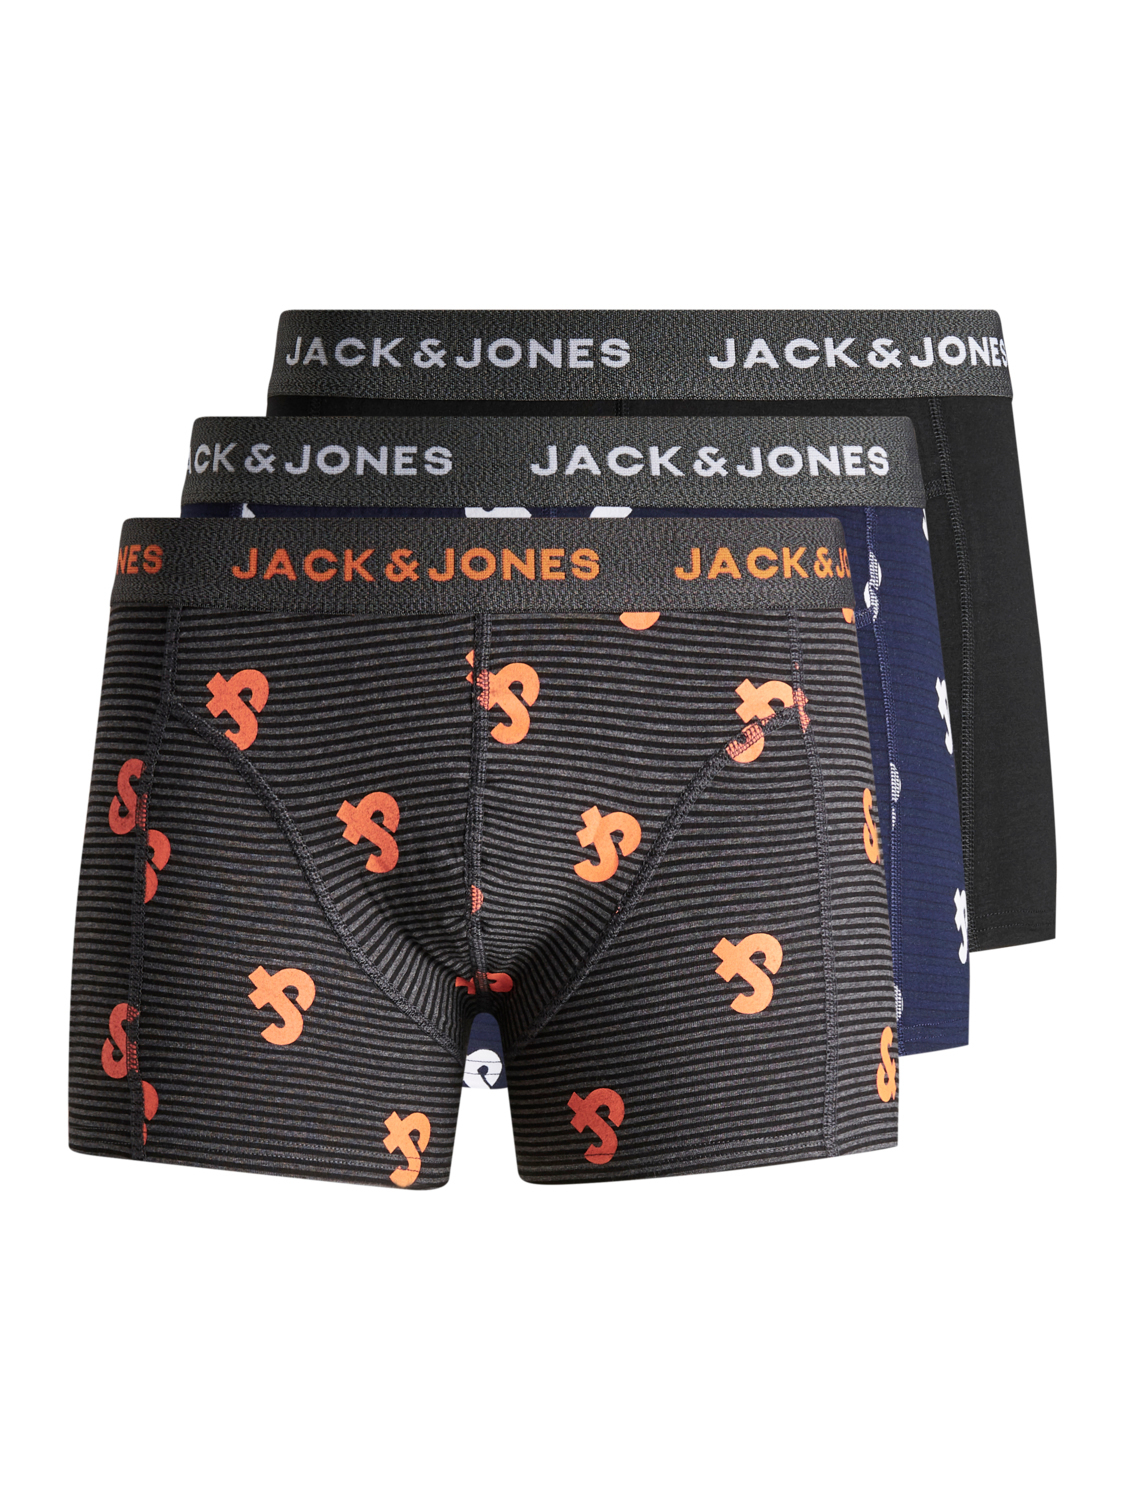 Afbeelding van Jack & Jones Jacstrip logo trunks 3 pack junior